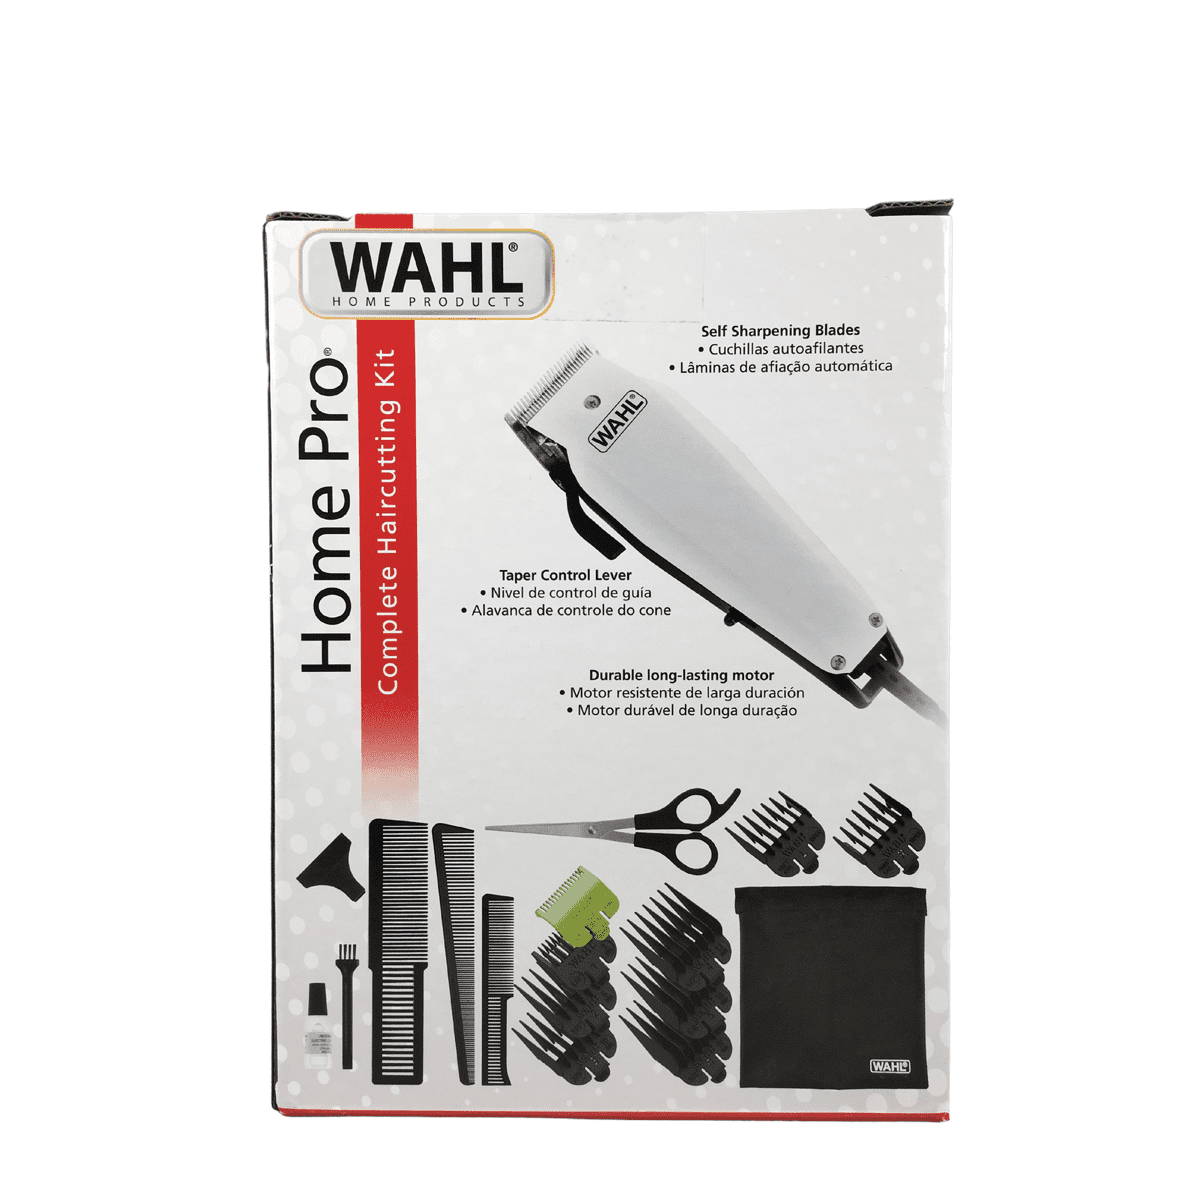 Cortadora de cabello Wahl Home Pro kit 18 piezas 09243-6408 Barbería